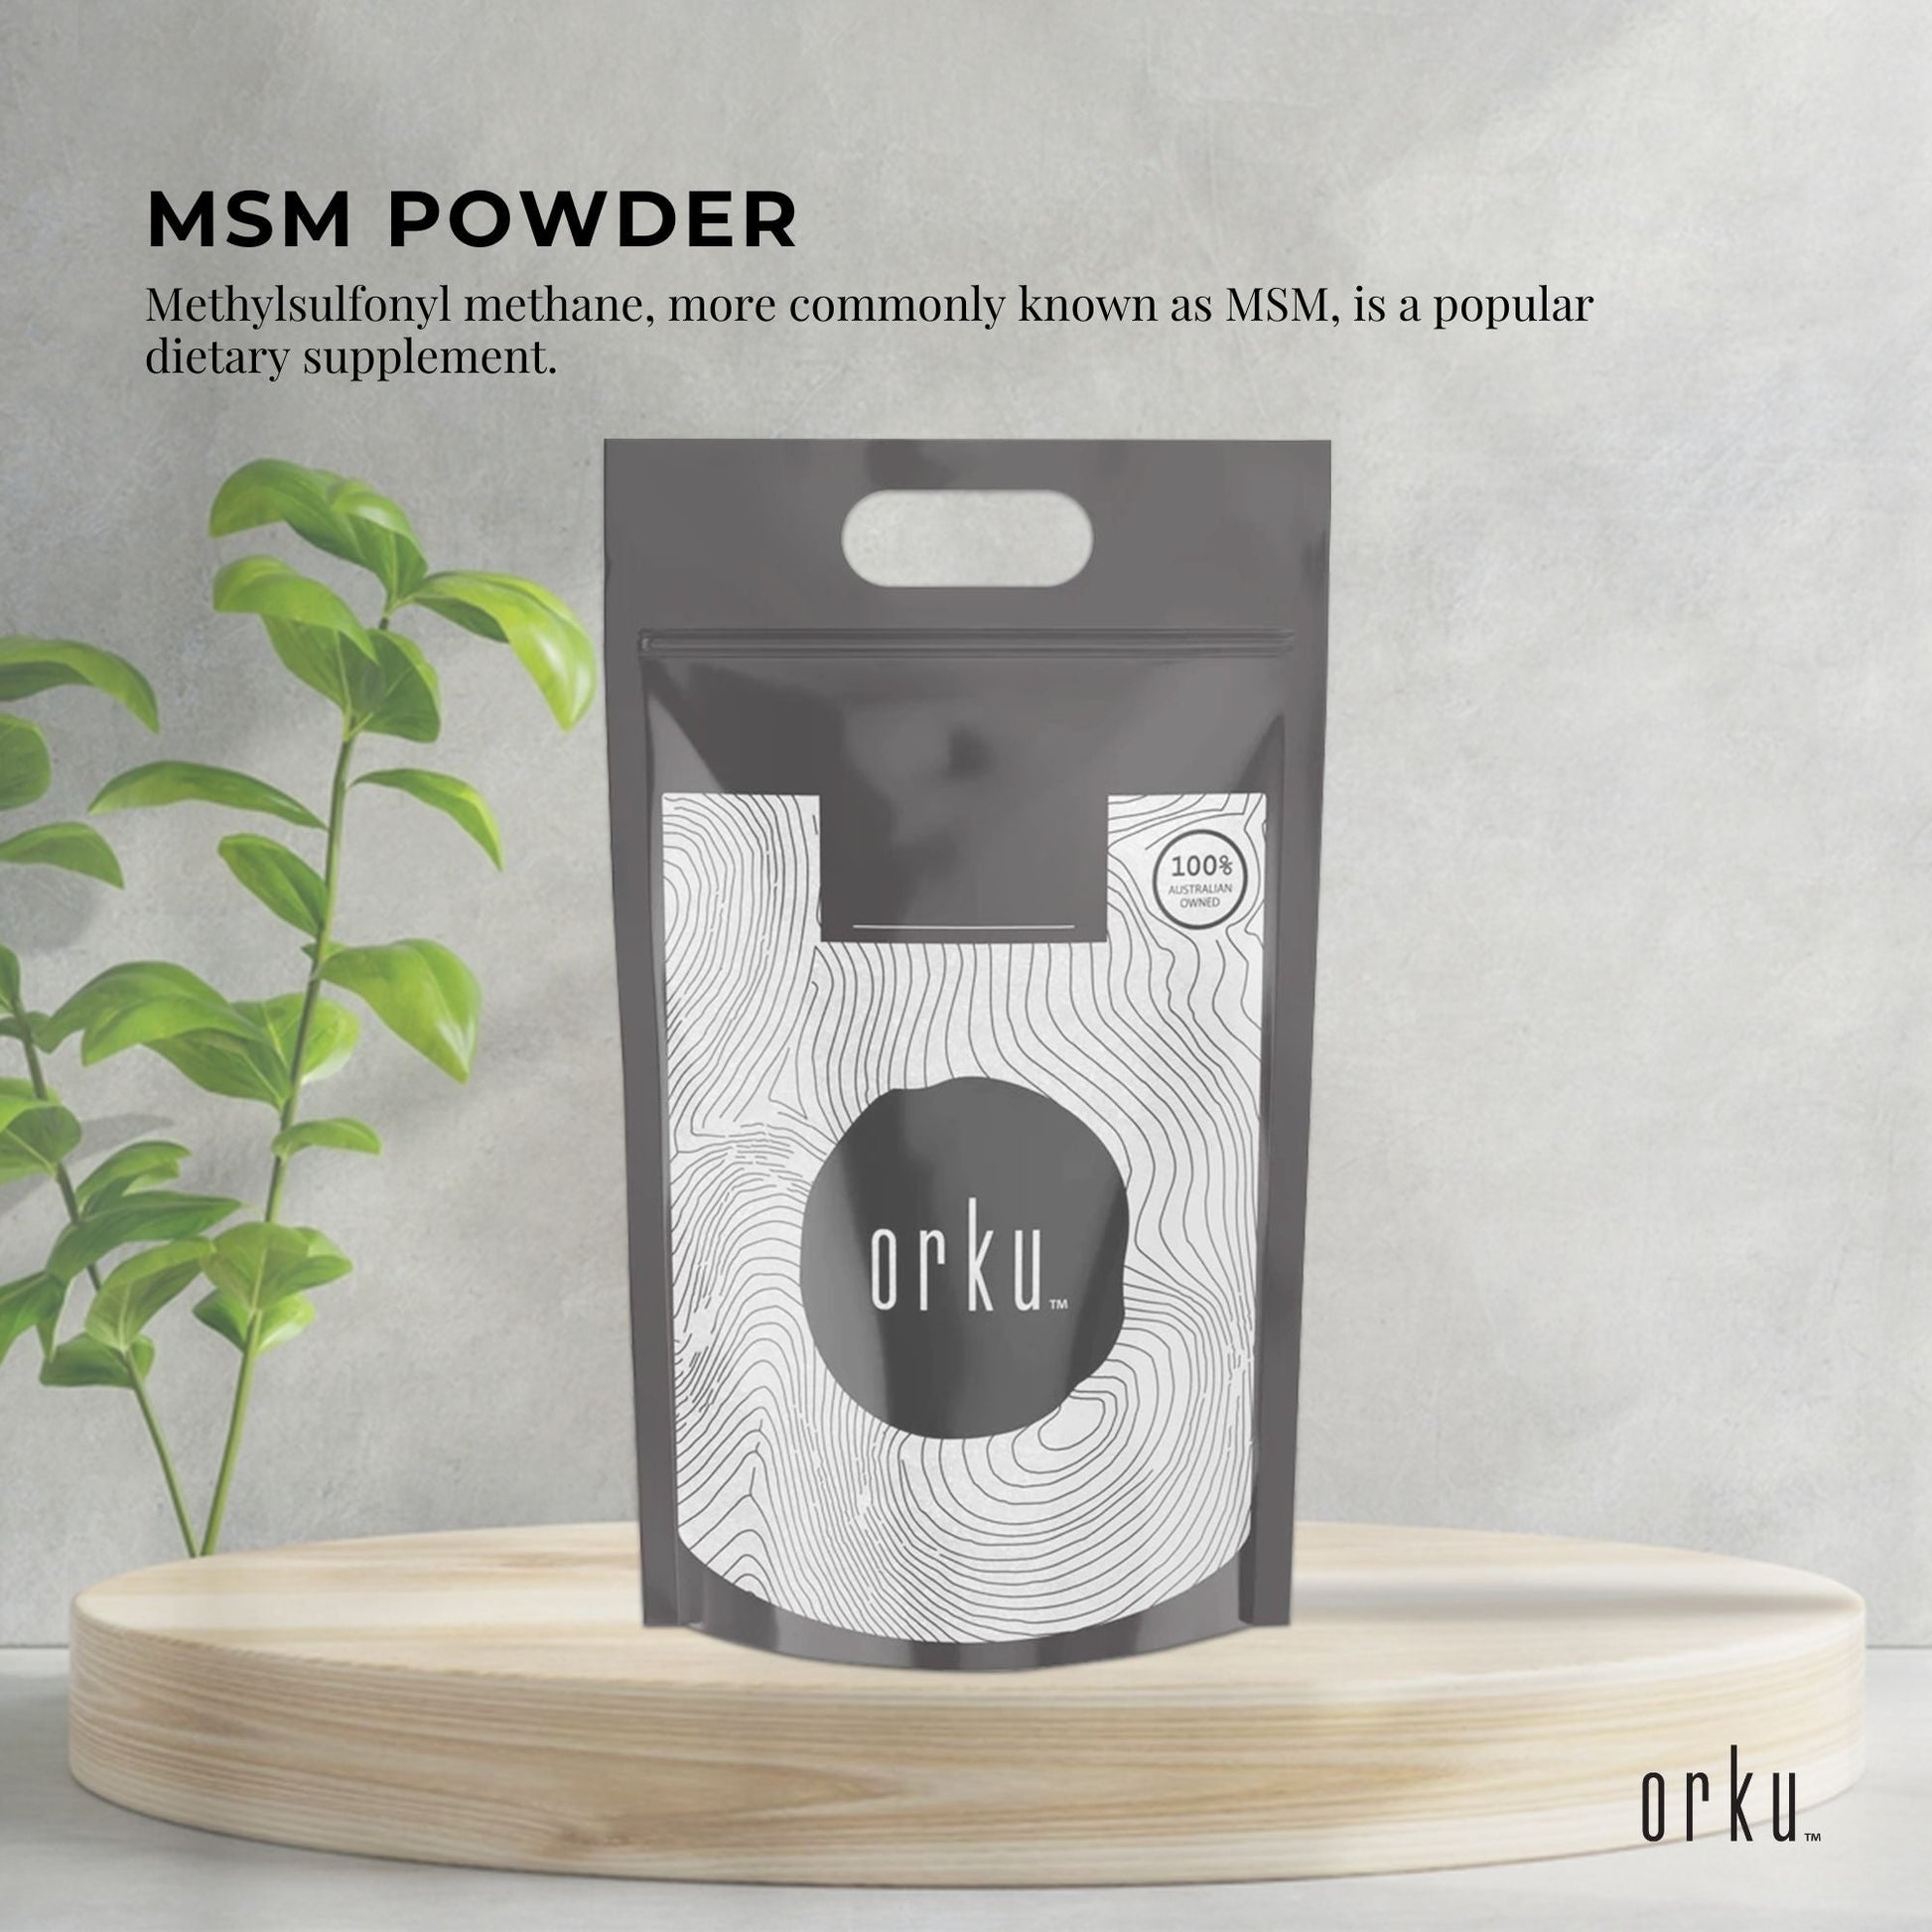 20Kg MSM Powder or Crystals Tub - 99% Pure Methylsulfonylmethane Dimethyl Sulfone